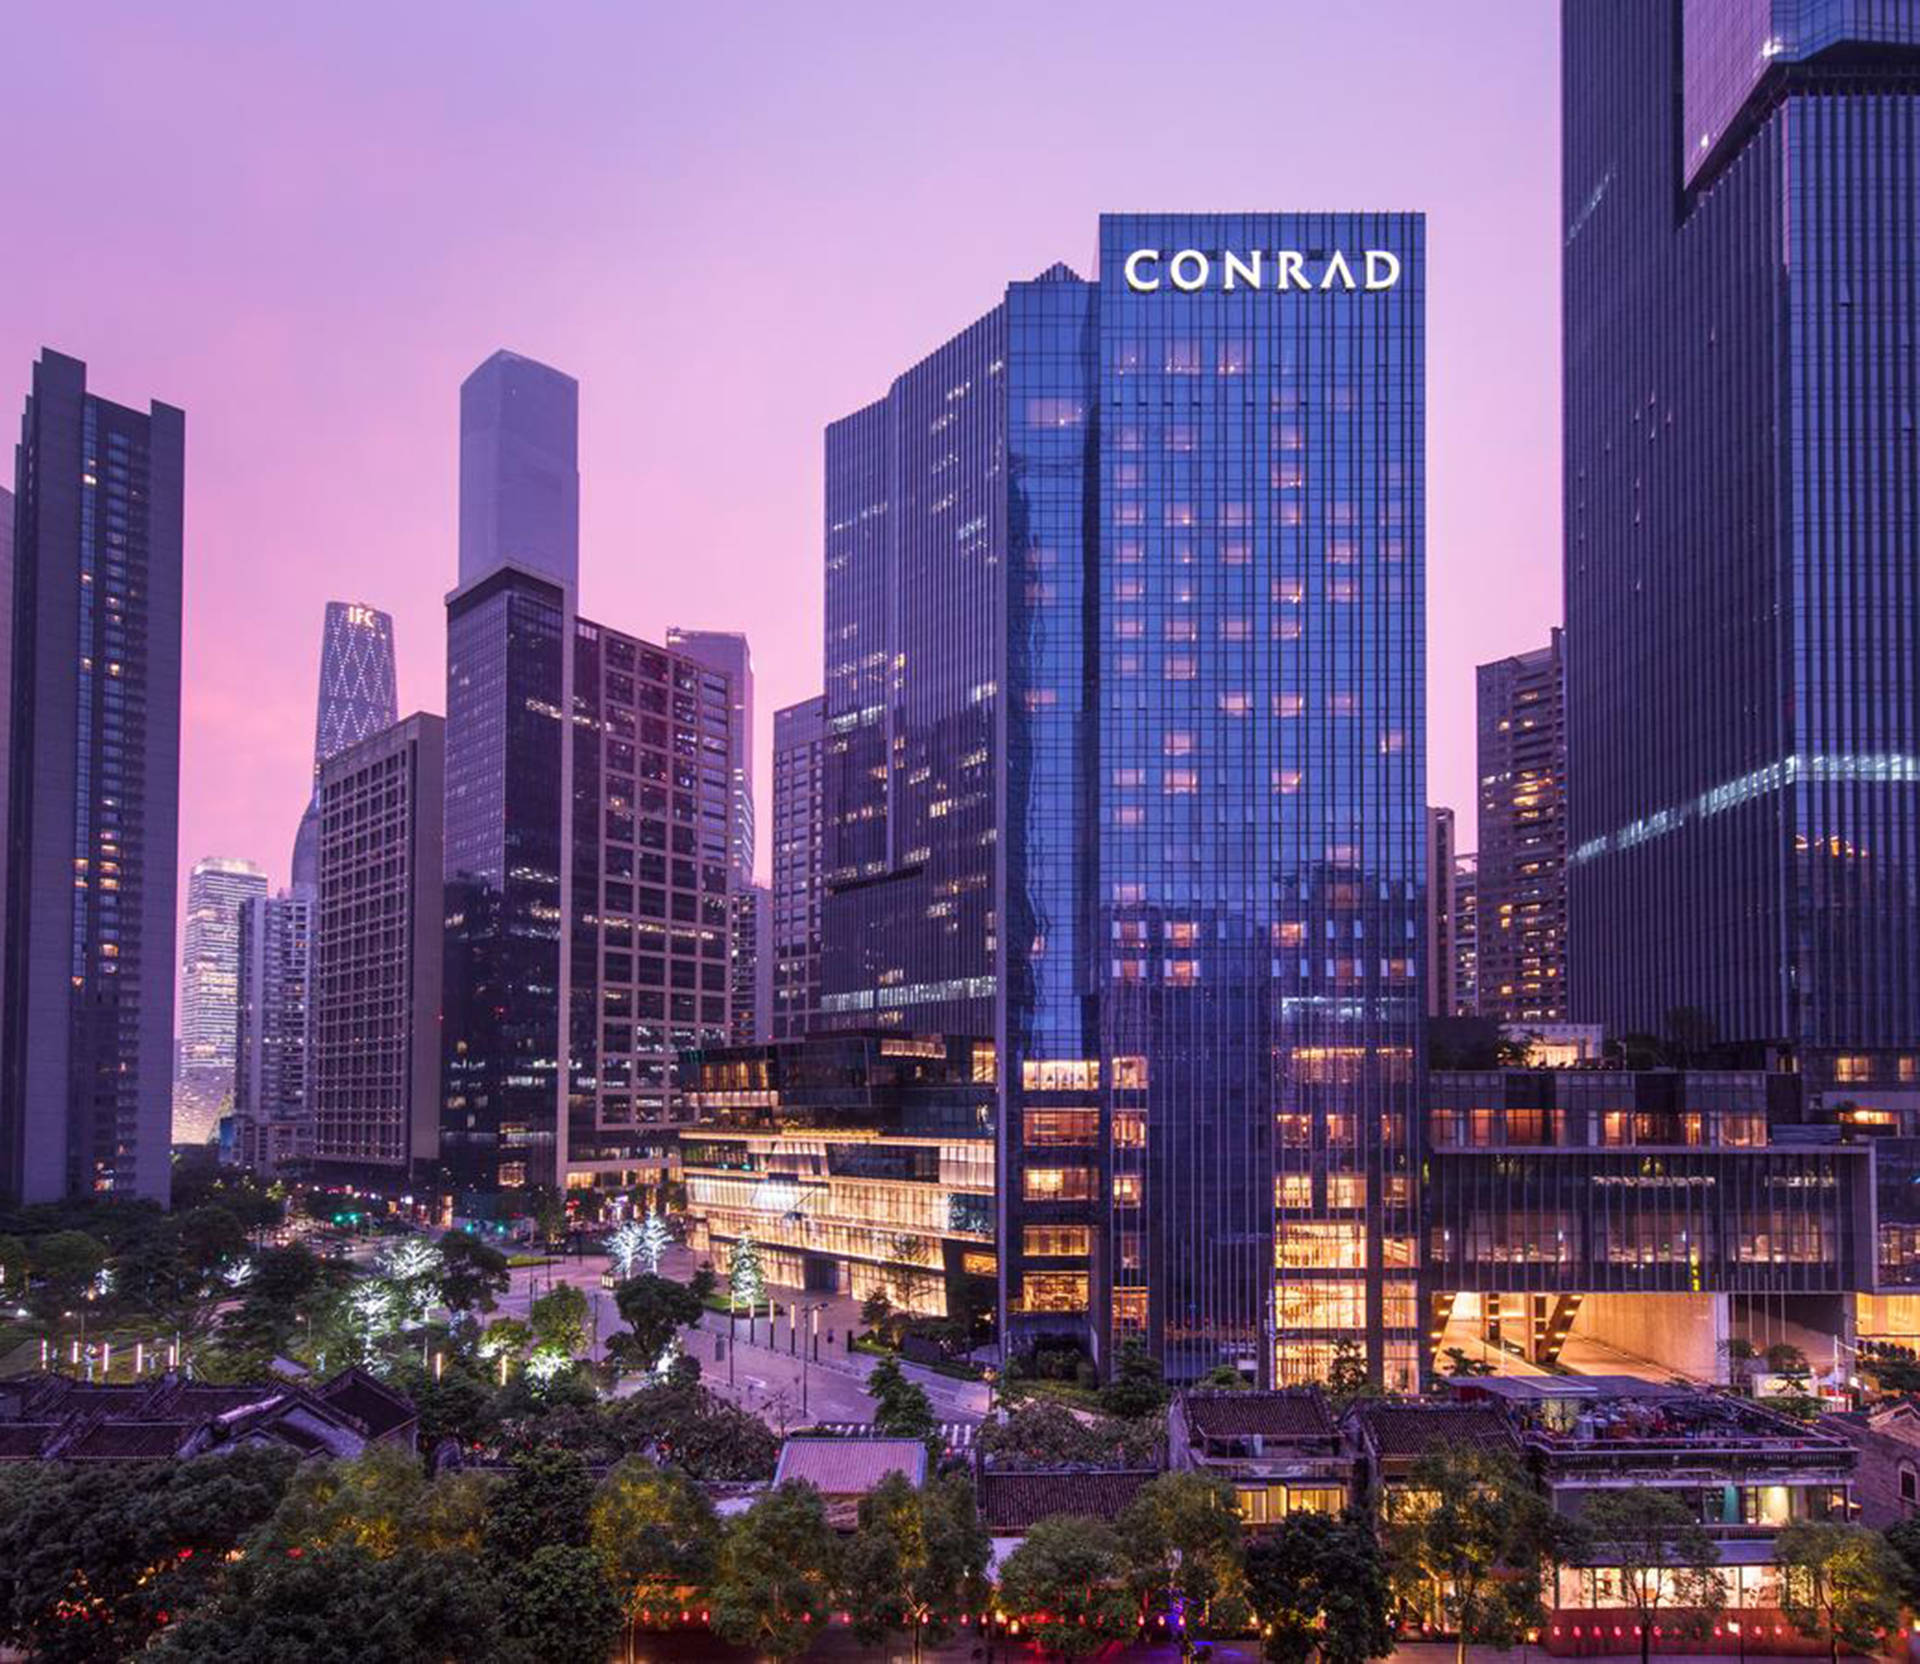 Guangzhou Conrad Hotel Wallpaper